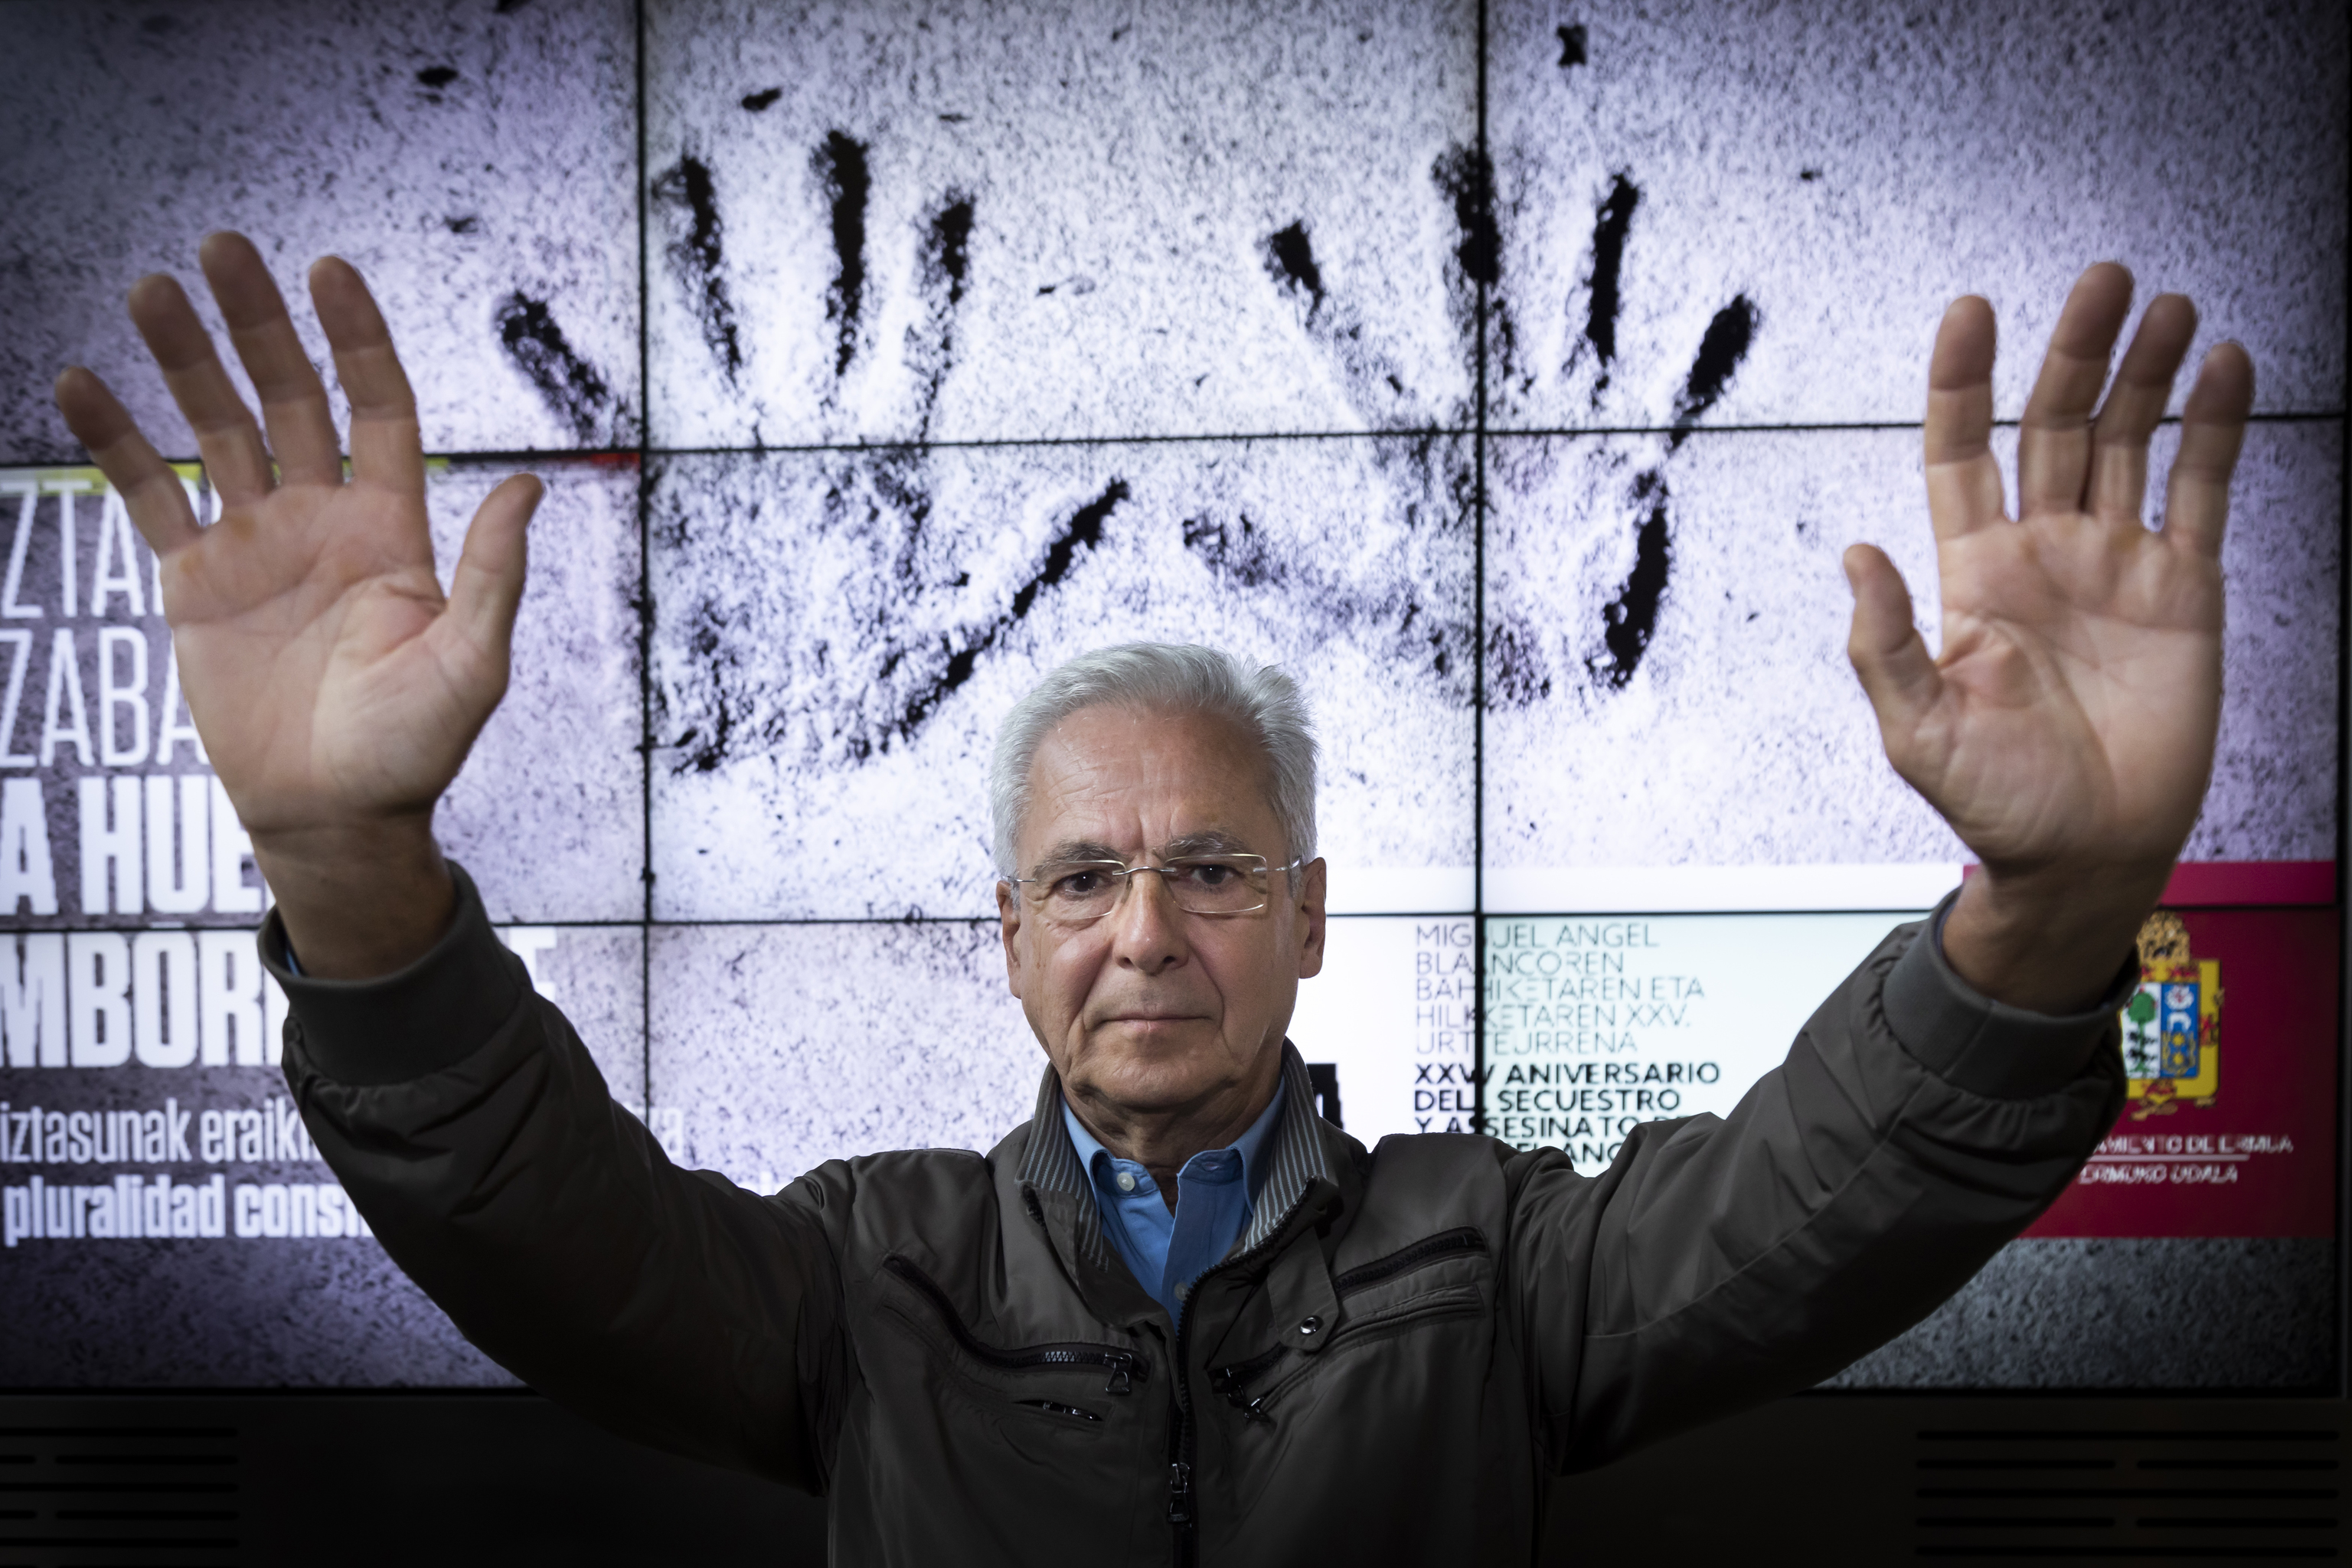 Carlos Totorika levanta las palmas de sus manos, símbolo de las movilizaciones contra ETA en el 'Espíritu de Ermua'.